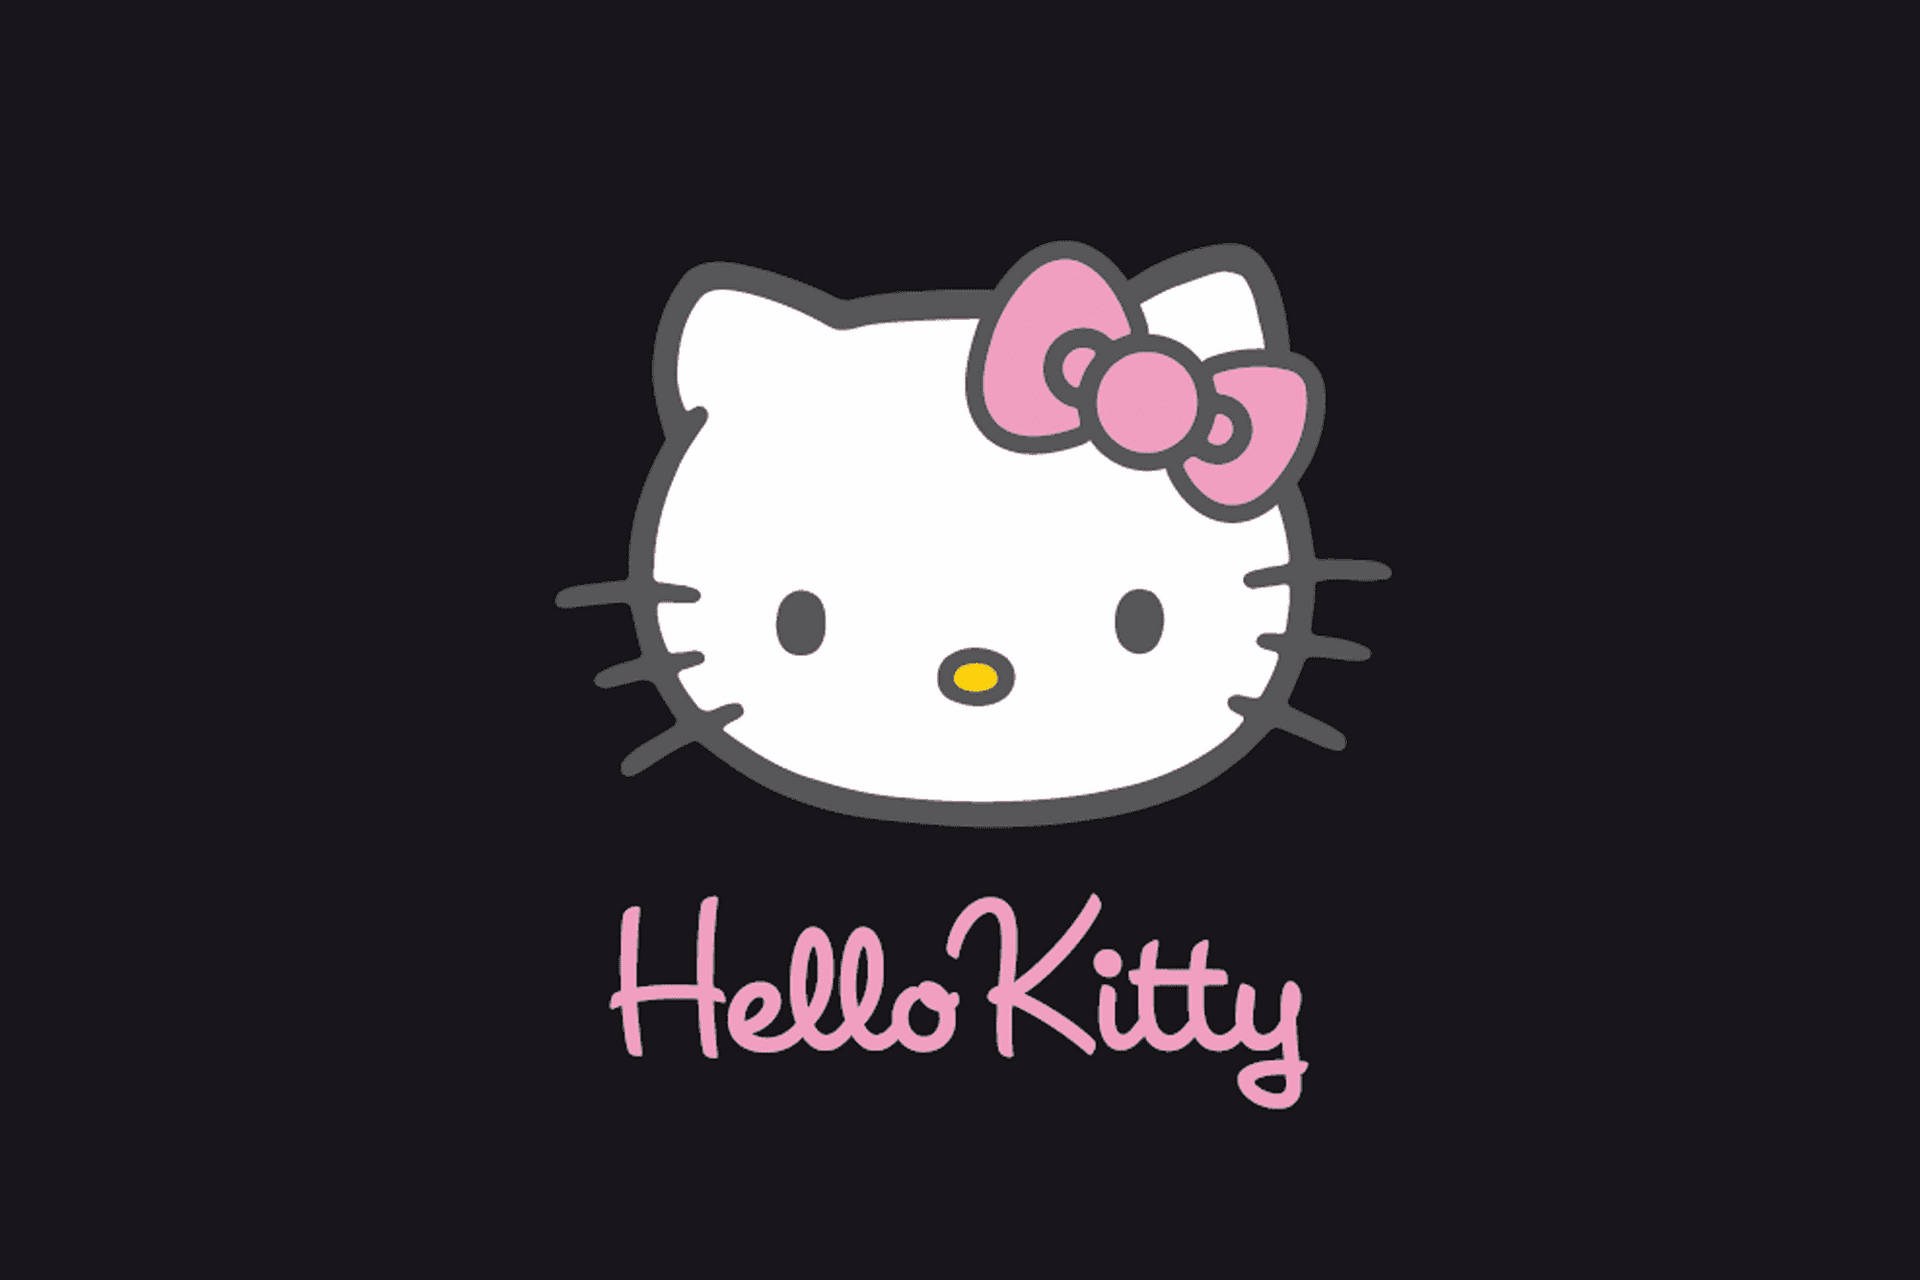 Sanrioschreibtischhintergrund Mit Hello Kitty Wallpaper